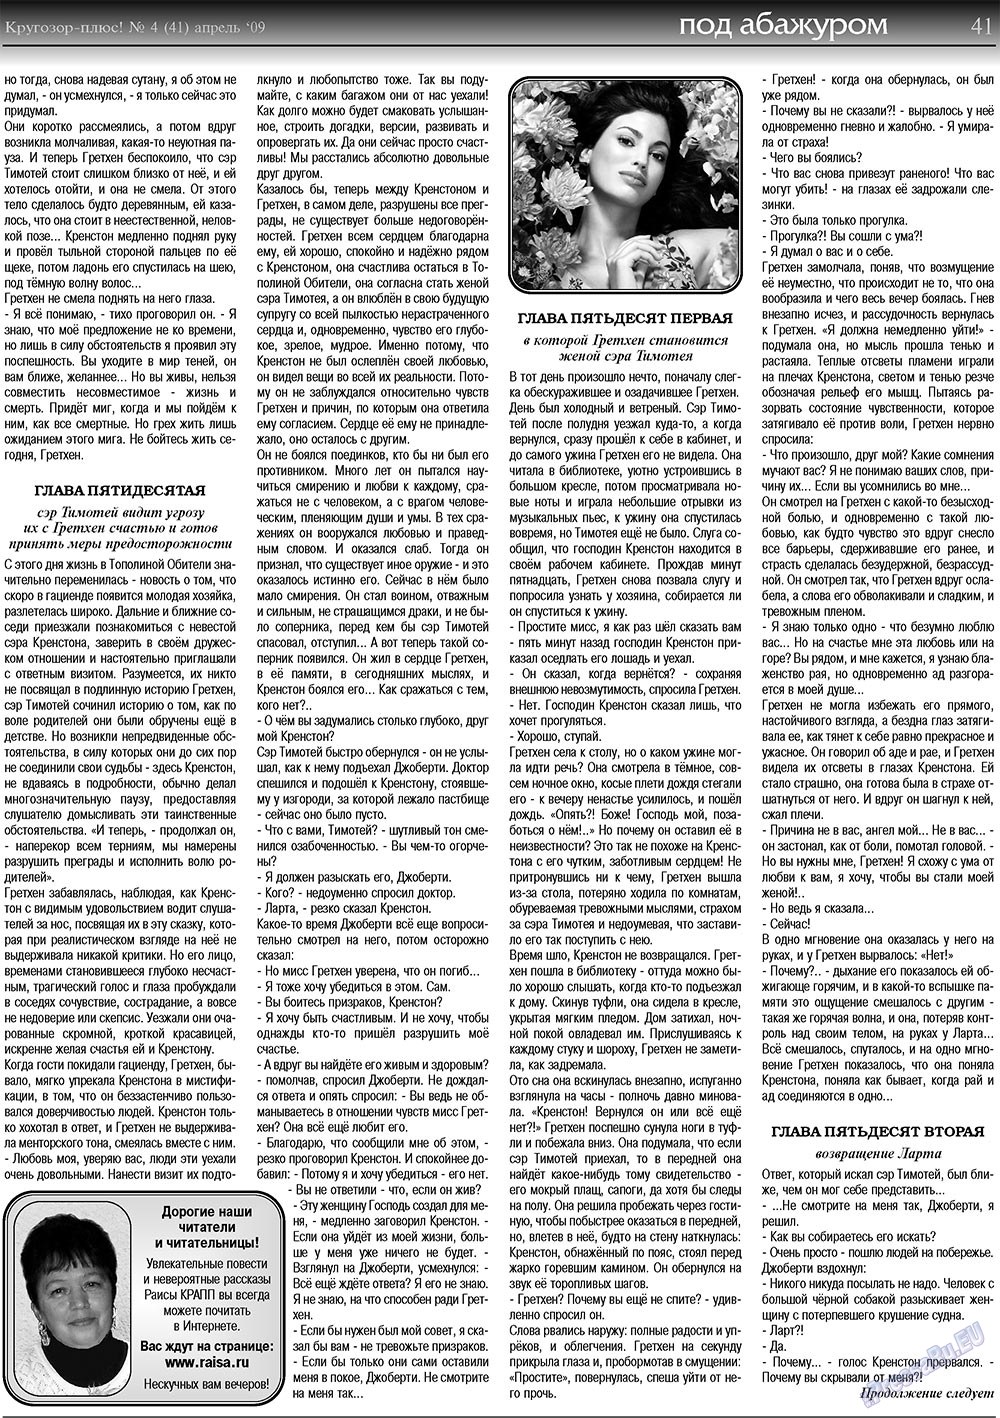 Кругозор плюс!, газета. 2009 №4 стр.41